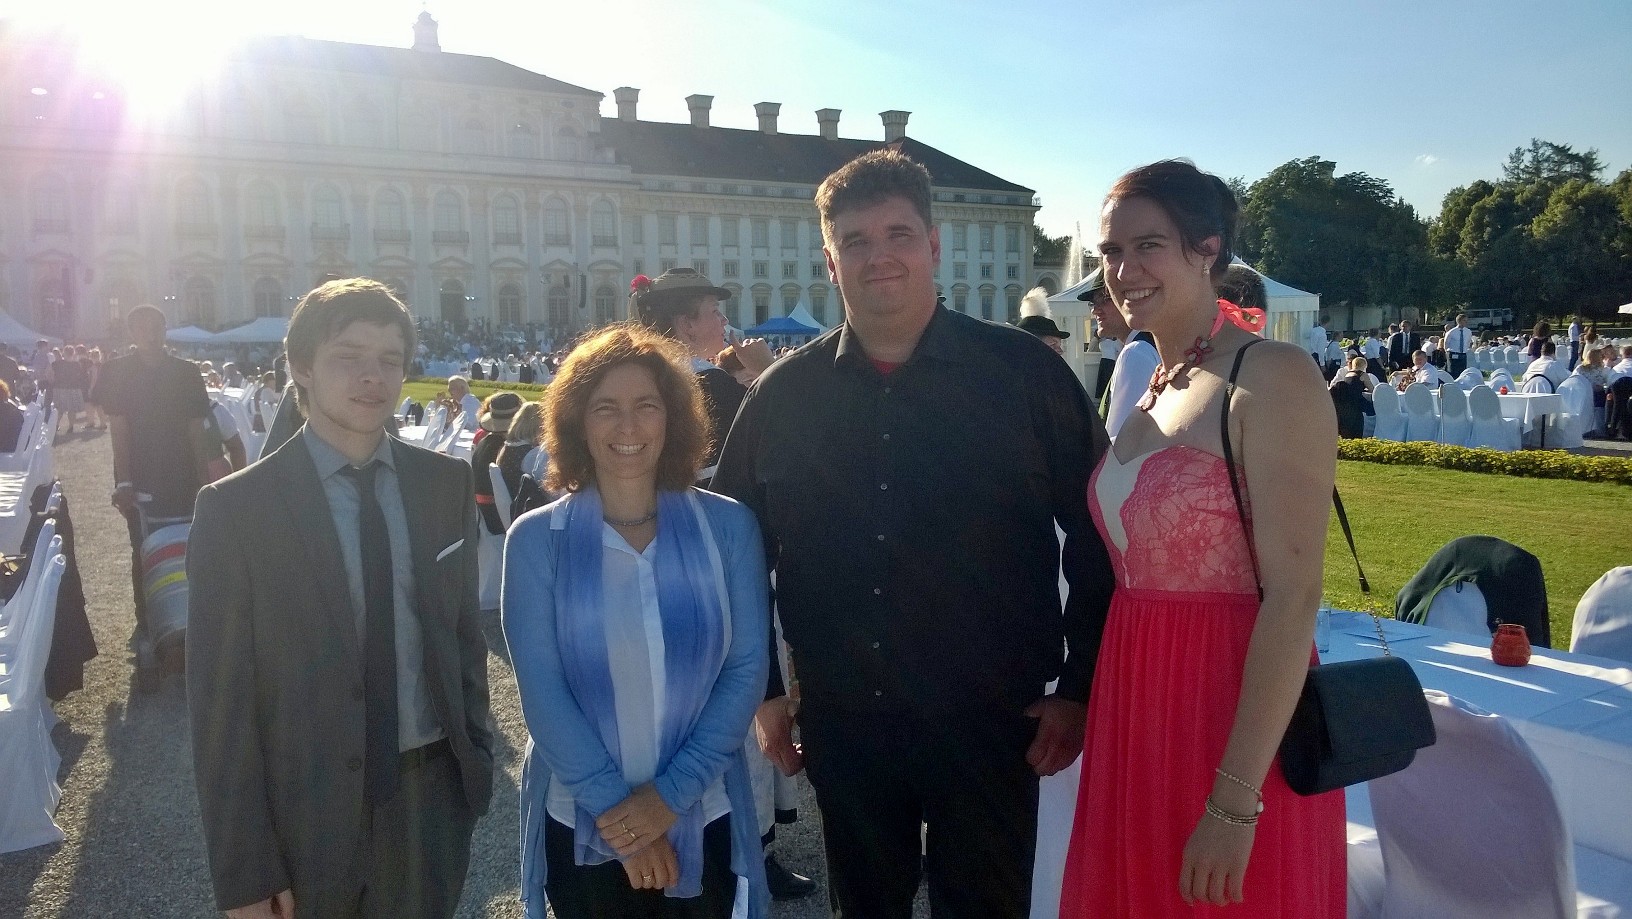 Kerstin Celina mit Michael Pagel und Jennifer Harde beim Sommerempfang des Bayerischen Landtags.